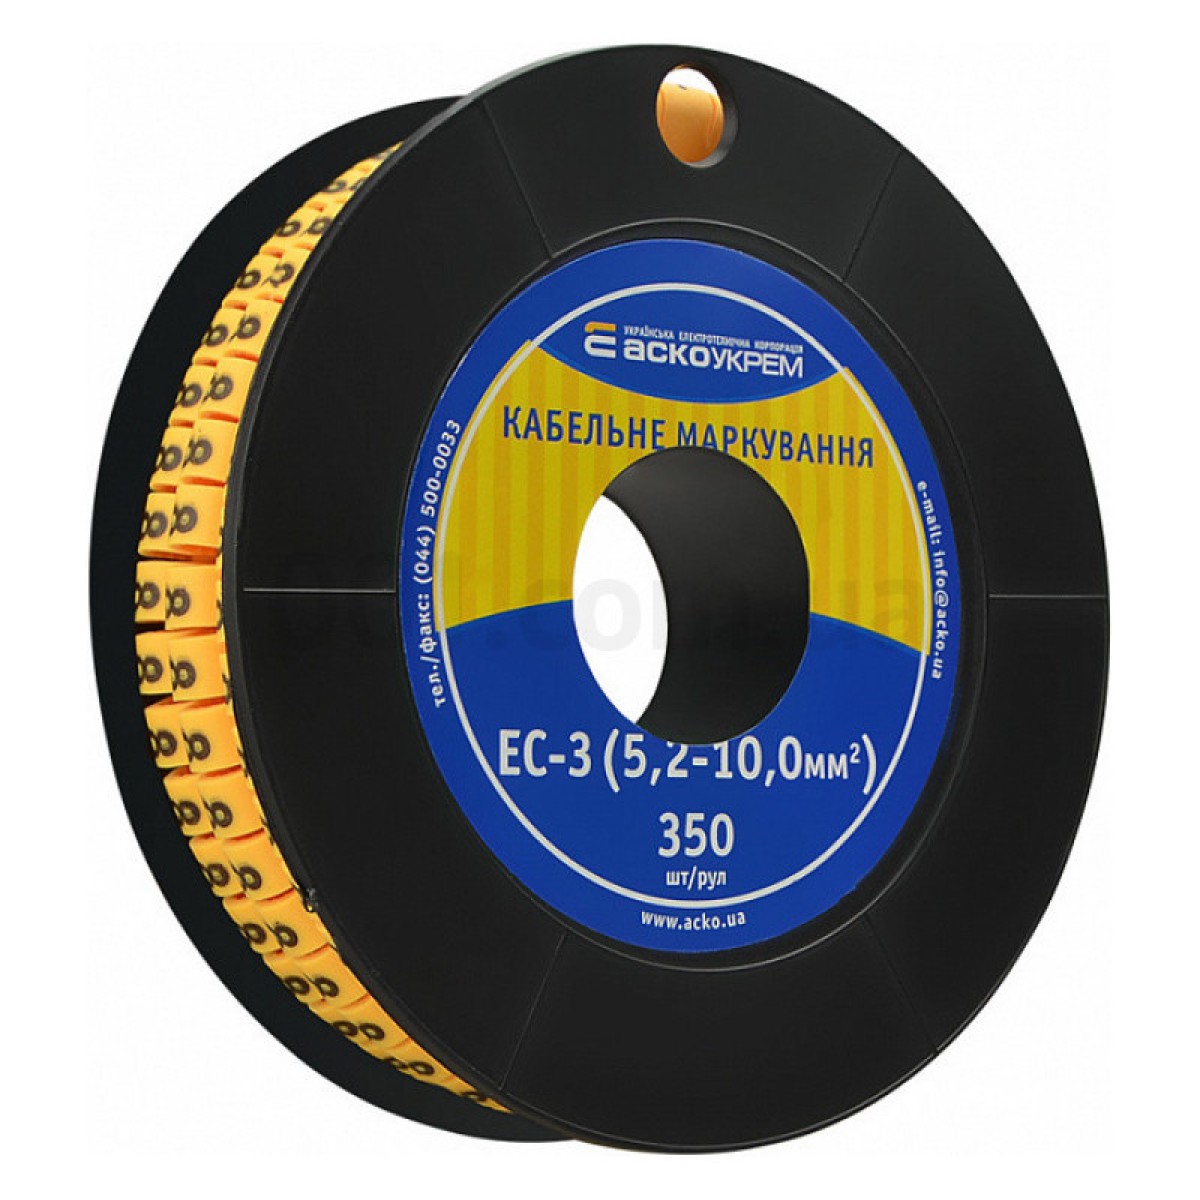 Маркировка EC-3 для кабеля 5,2-10,0 мм² символ «8» (рулон 250 шт.), АСКО-УКРЕМ 256_256.jpg